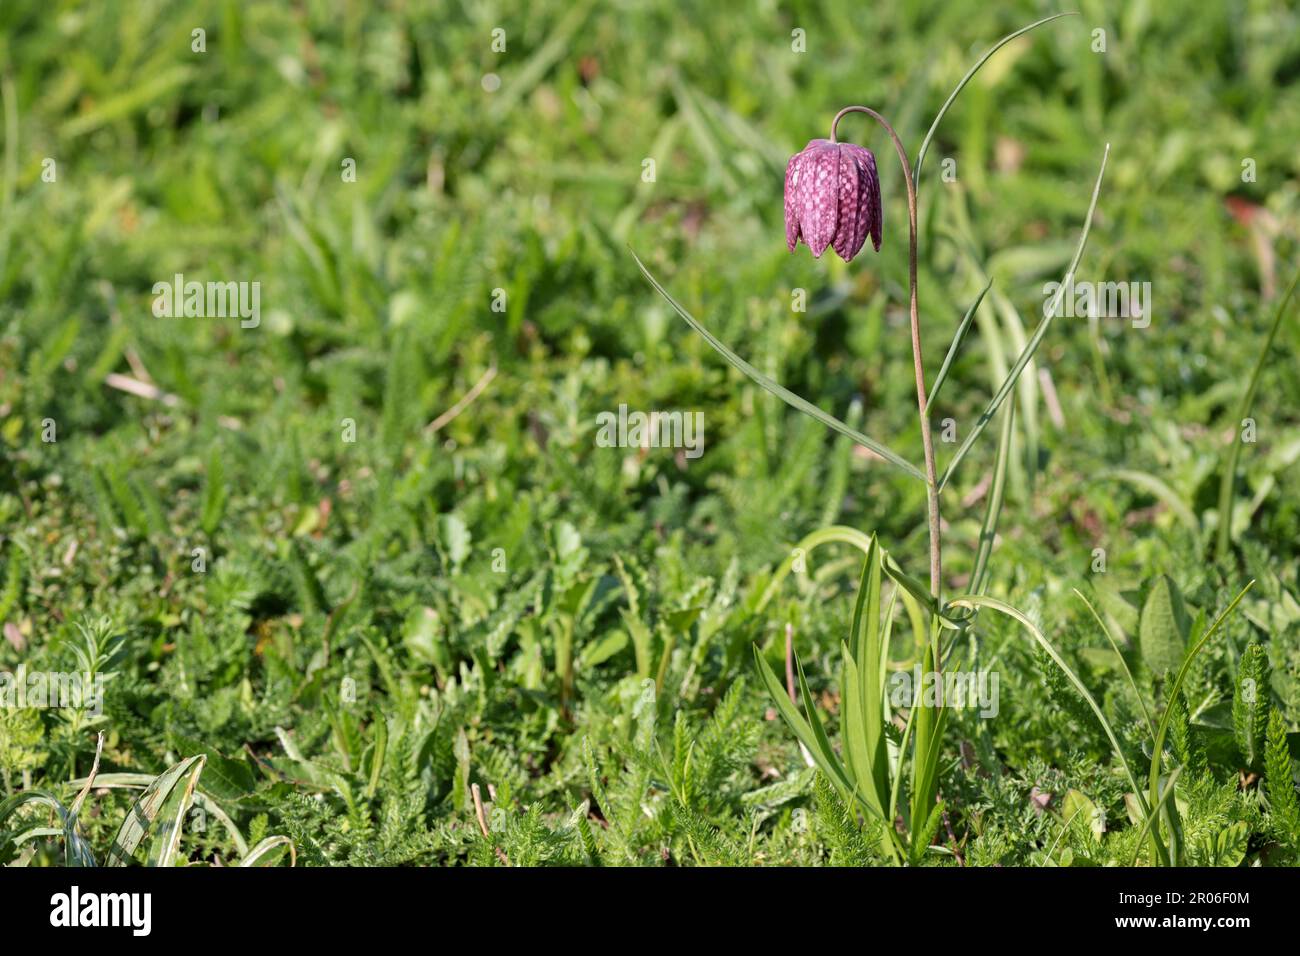 Testa di serpente fritillaria meleagris, campana rosa viola annuente a forma di fiore pendente con segni scuri a scacchi dal gambo sottile Foto Stock